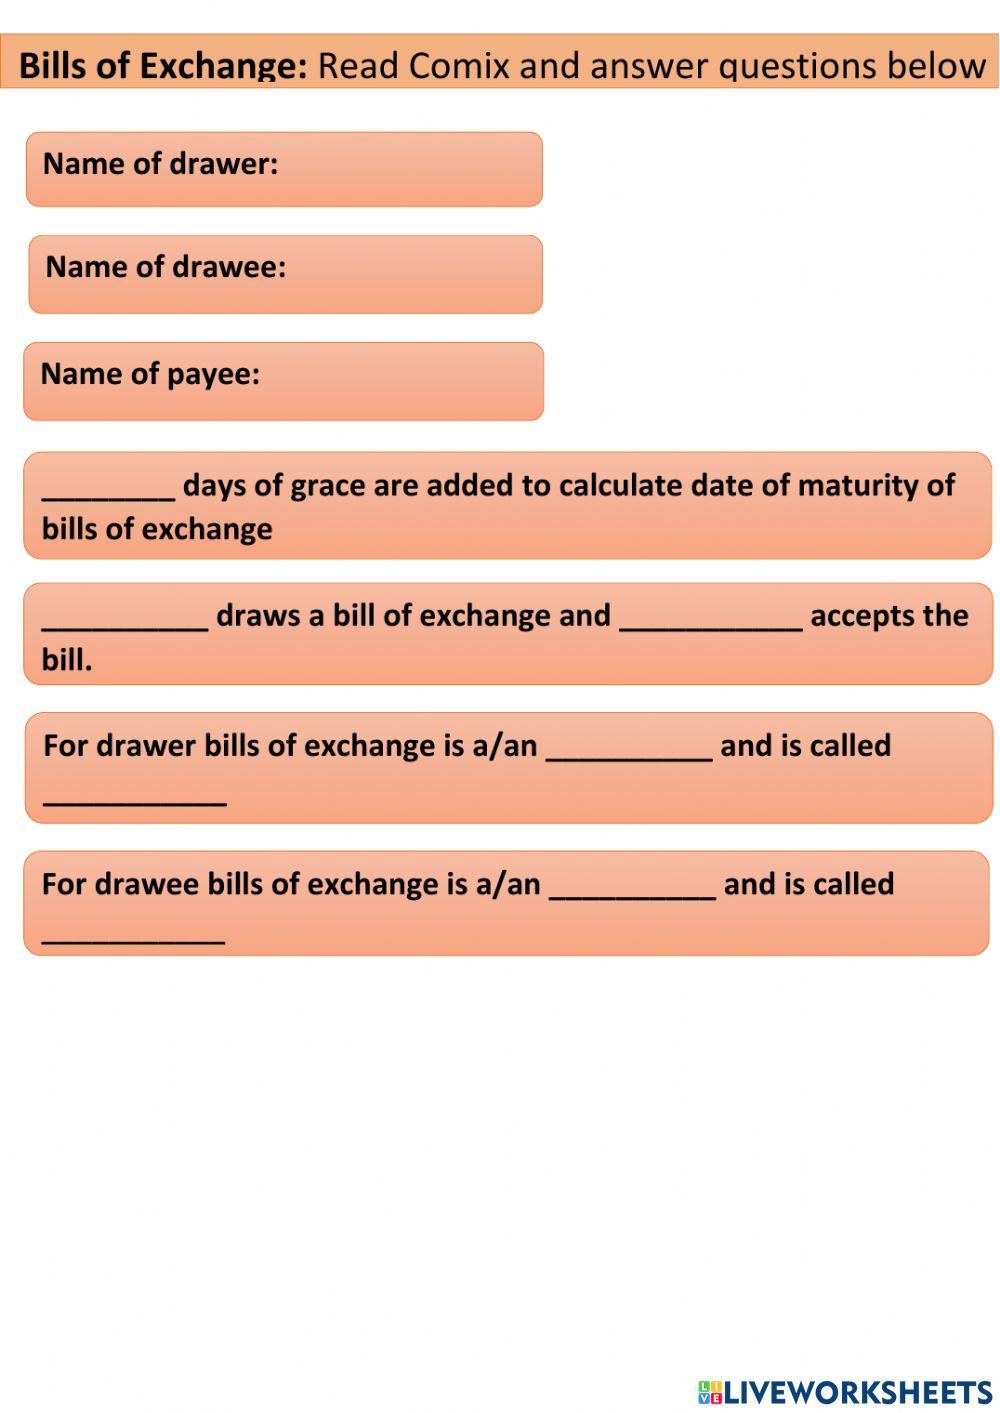 Bills of exchange